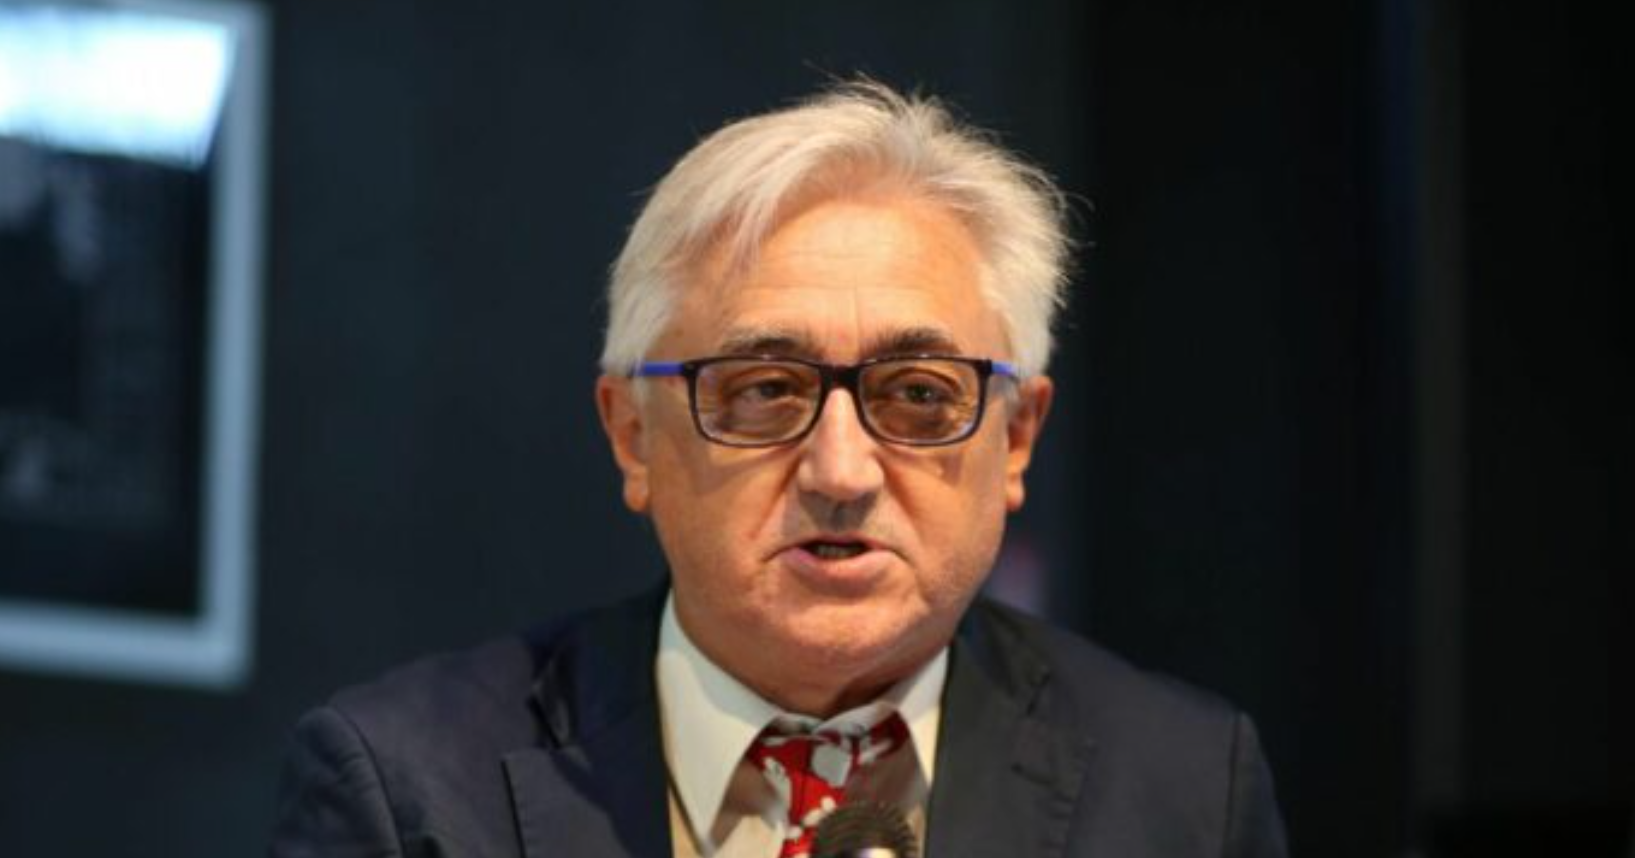 Torino ginecologo Silvio Viale violenza sessuale